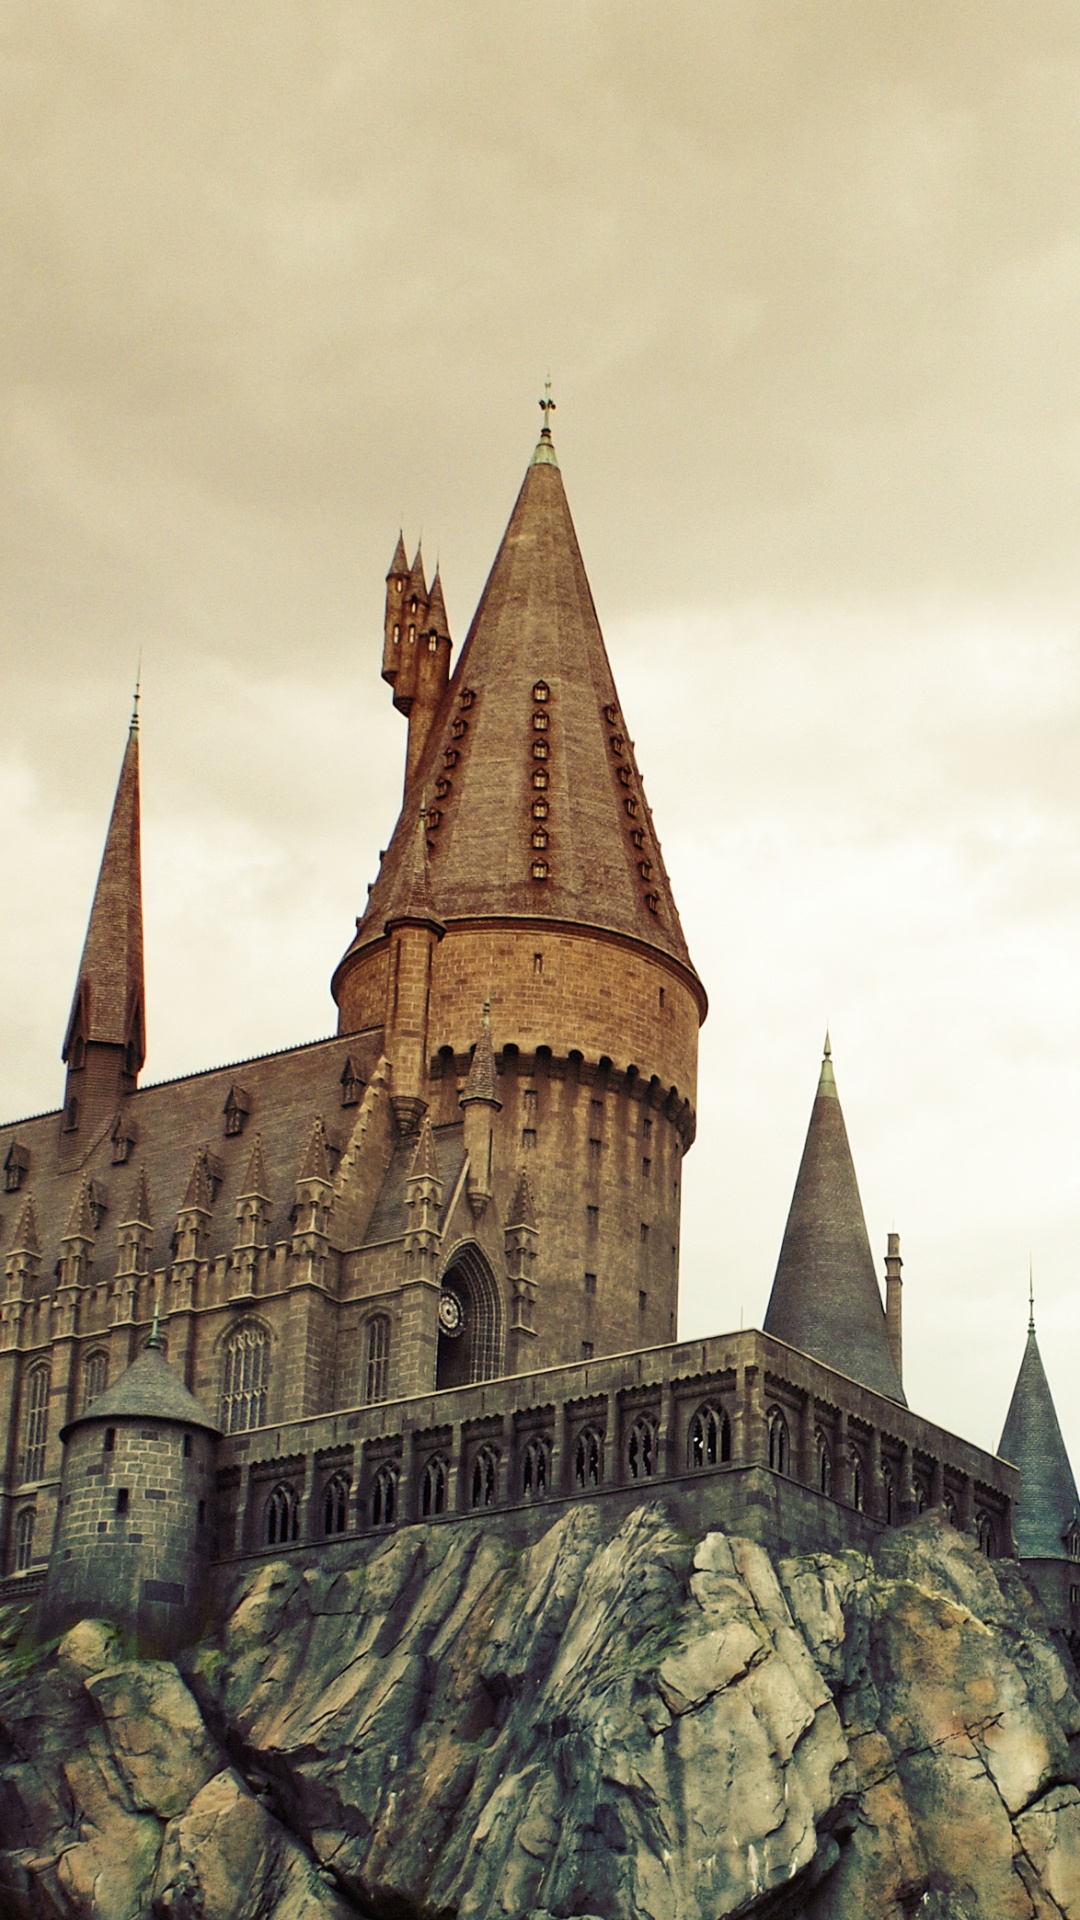 魔法世界的哈利*波特, 旅游景点, 里程碑, 中世纪建筑风格, 尖顶 壁纸 1080x1920 允许